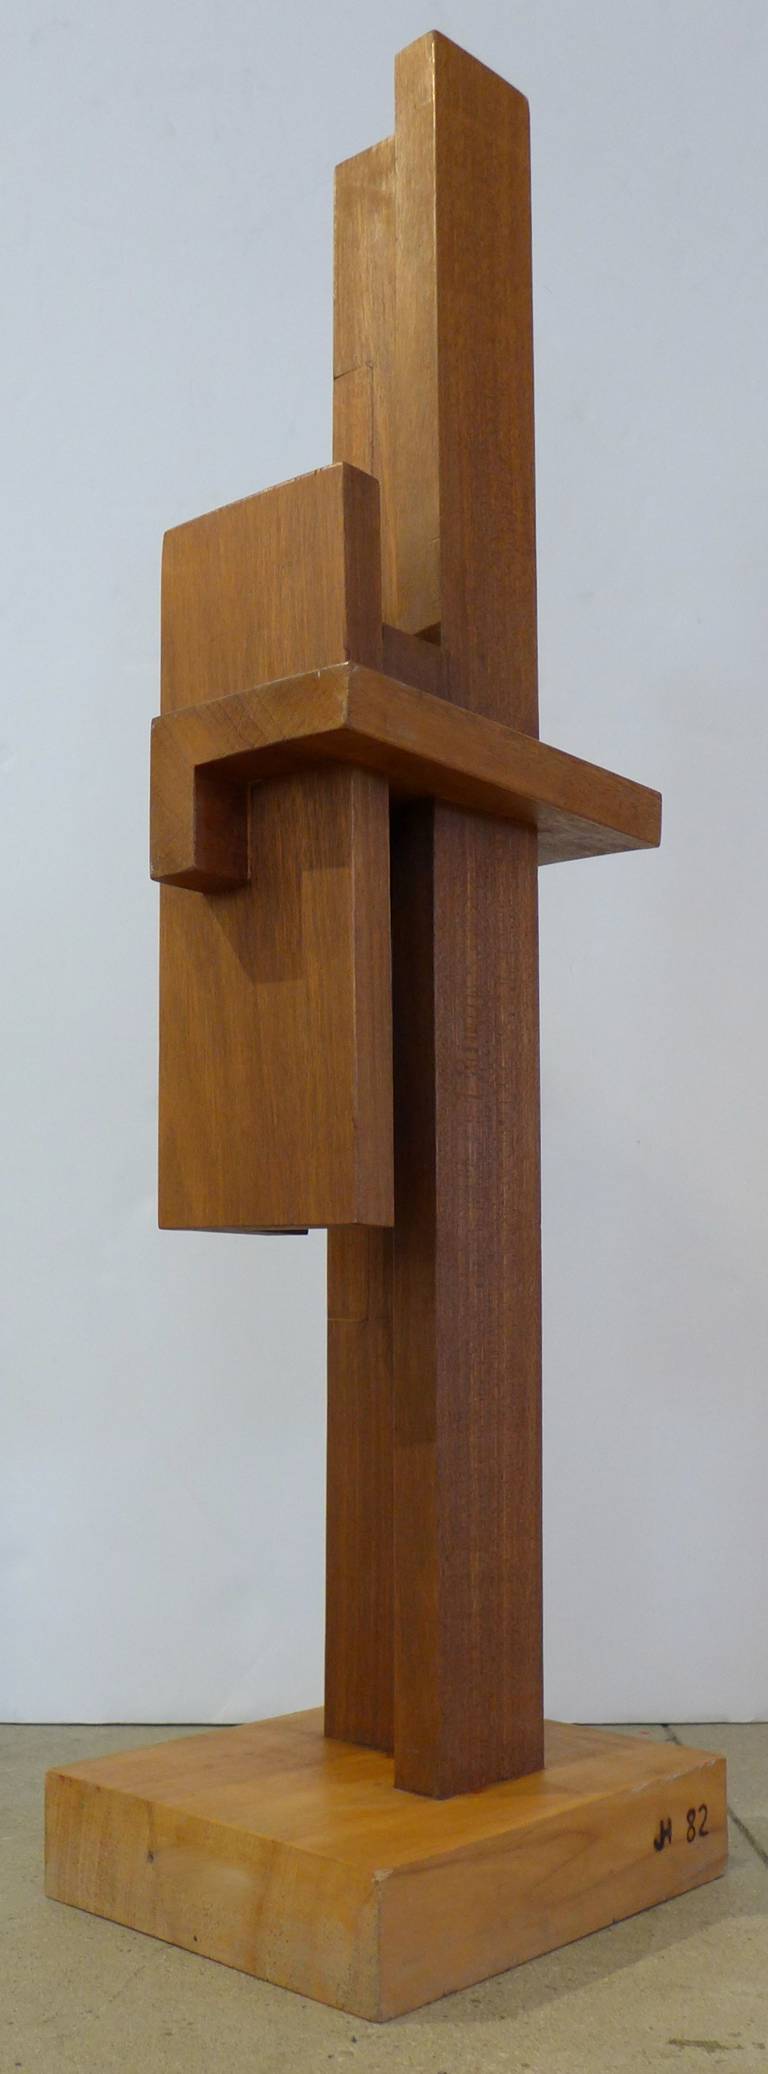 De Stijl Tall Constructivist Sculpture by Johannes Hoog